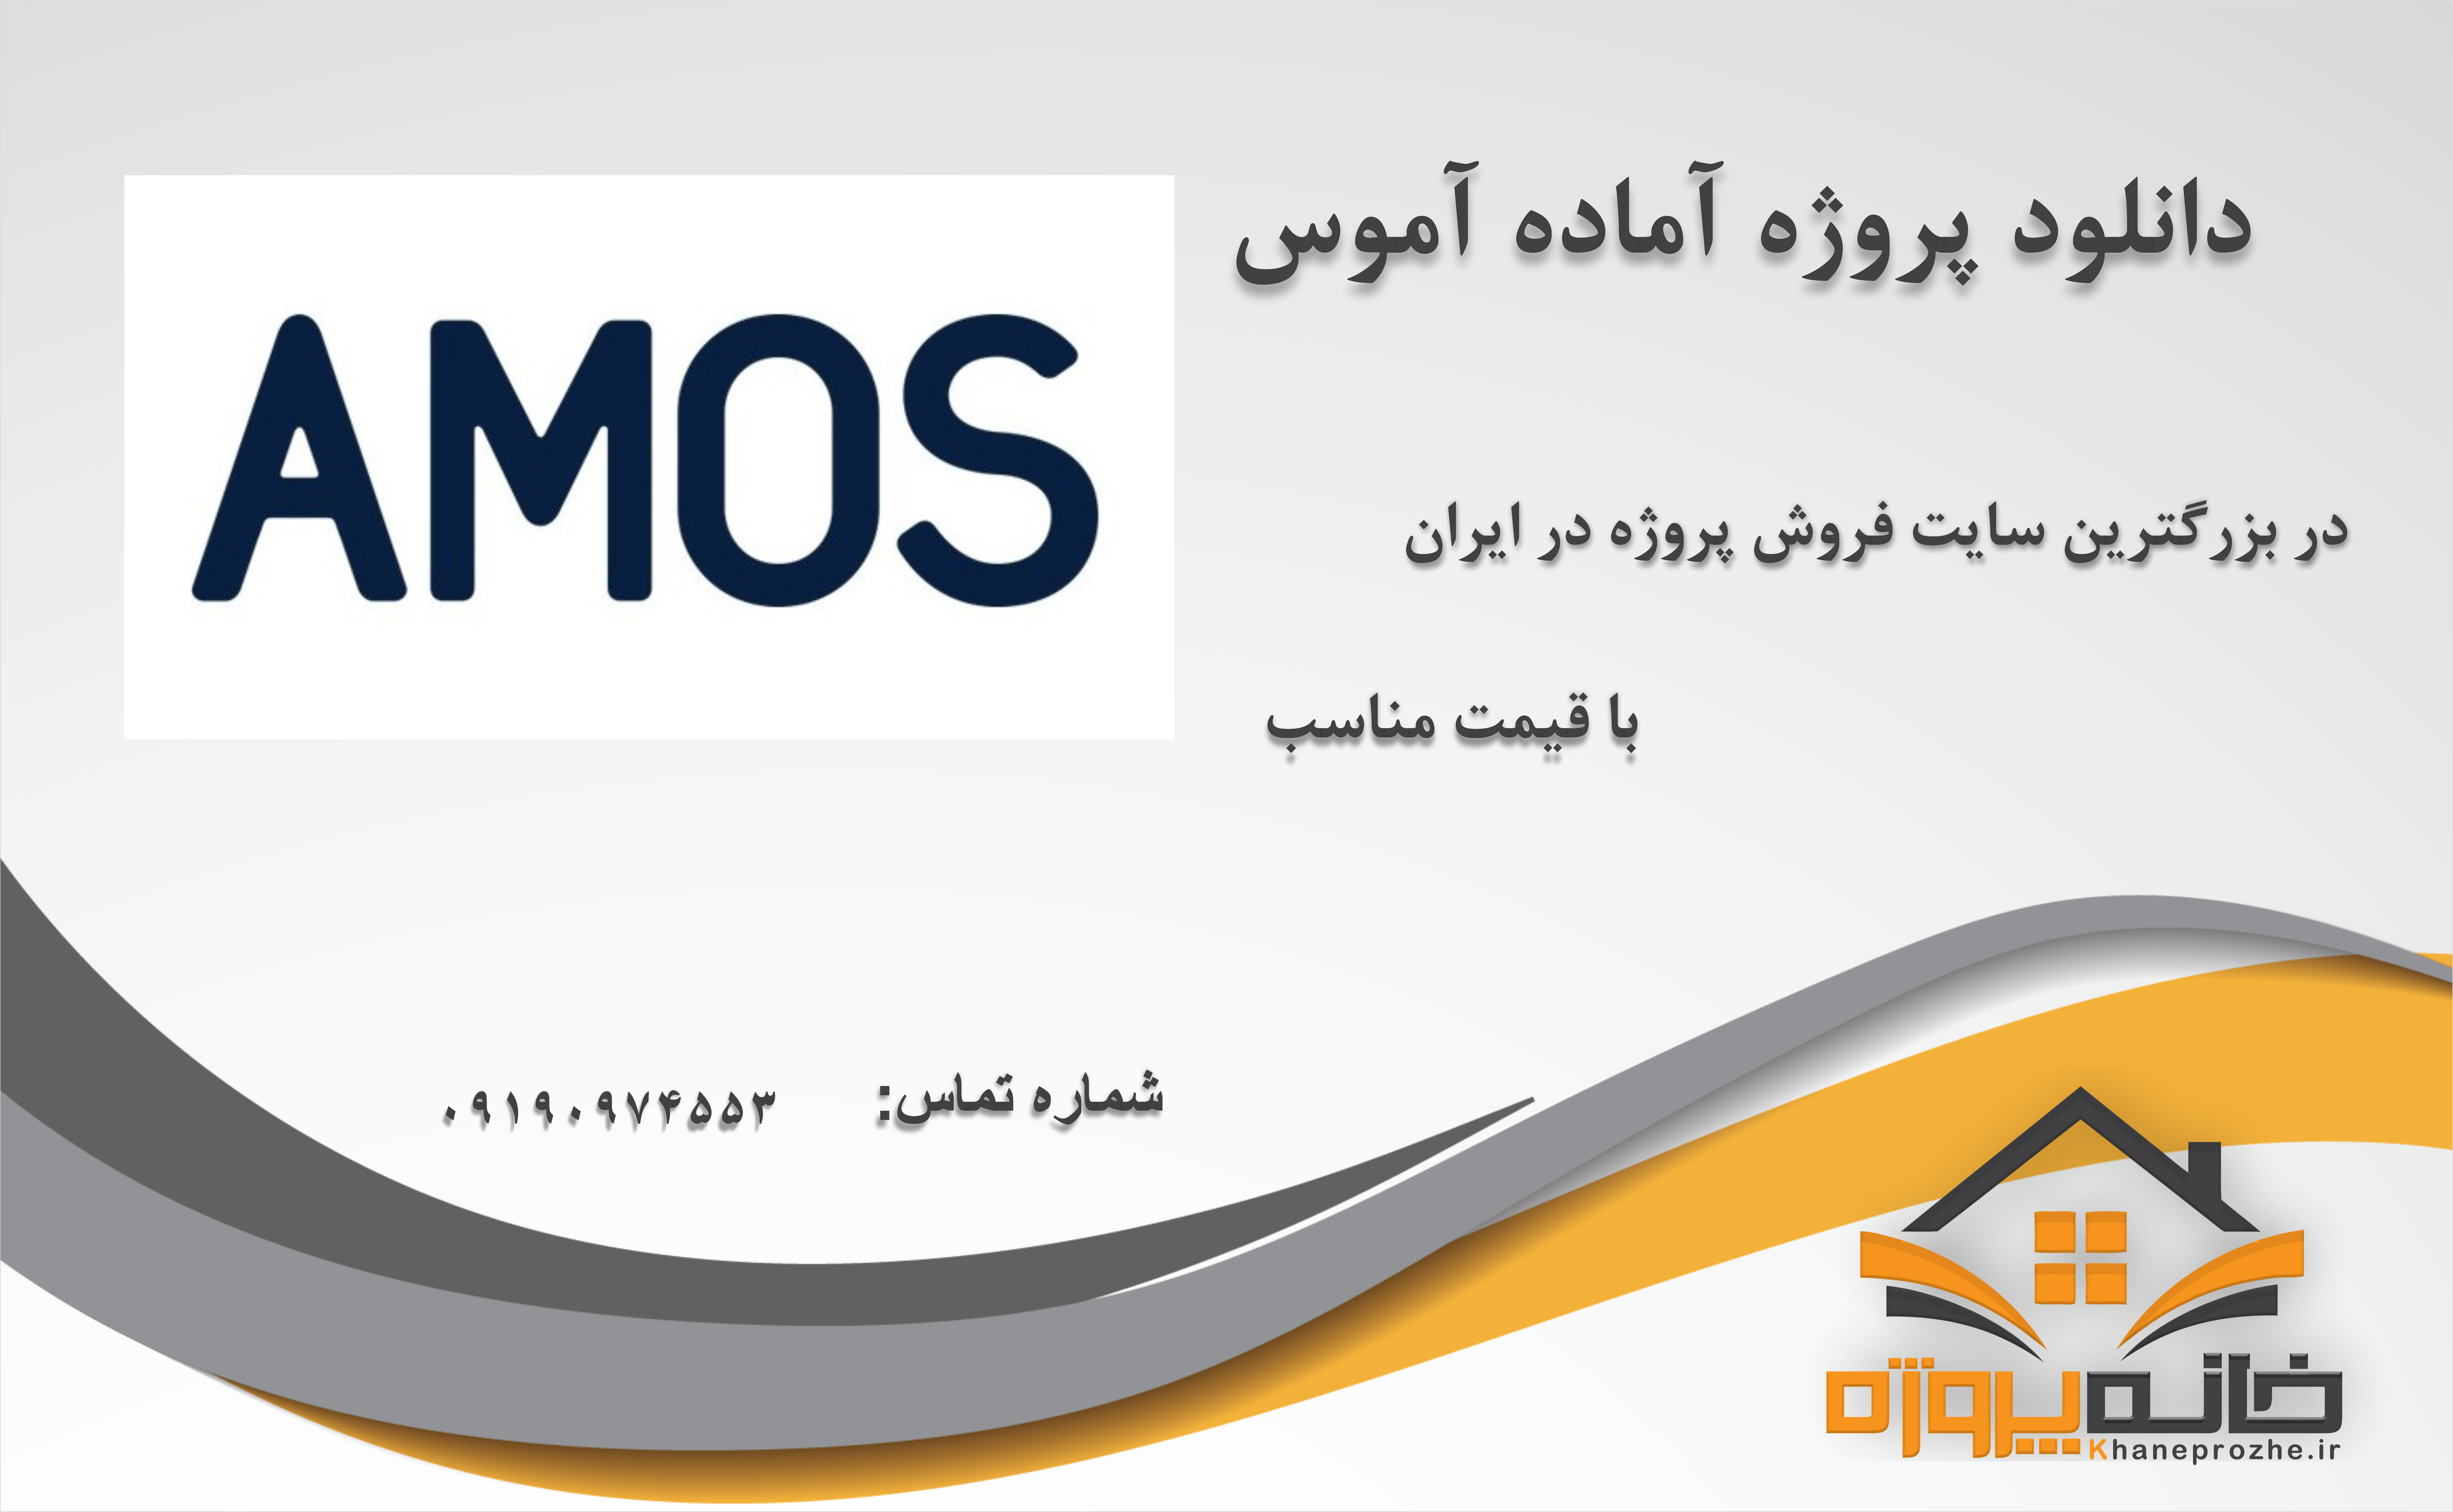 پروژه آماده آموس (AMOS)